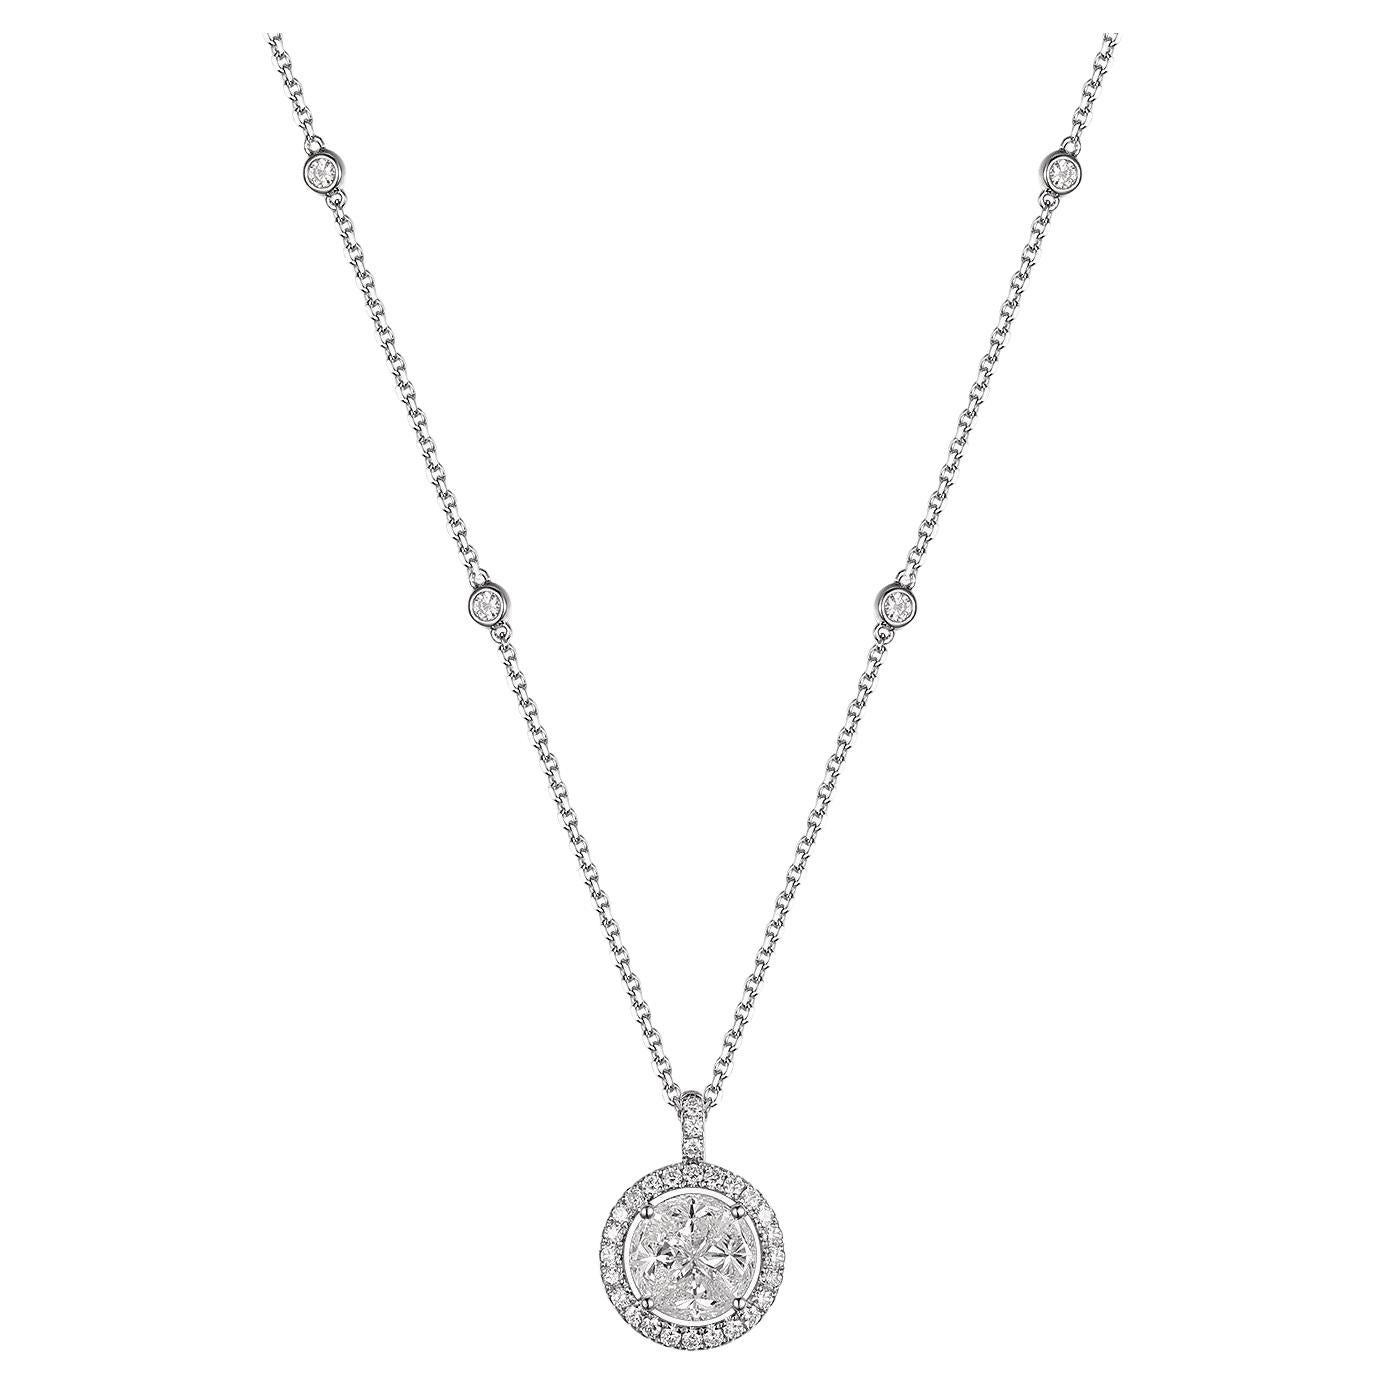 IGI Certifiled 1.57Carat Diamond Necklace in 18 Karat White Gold